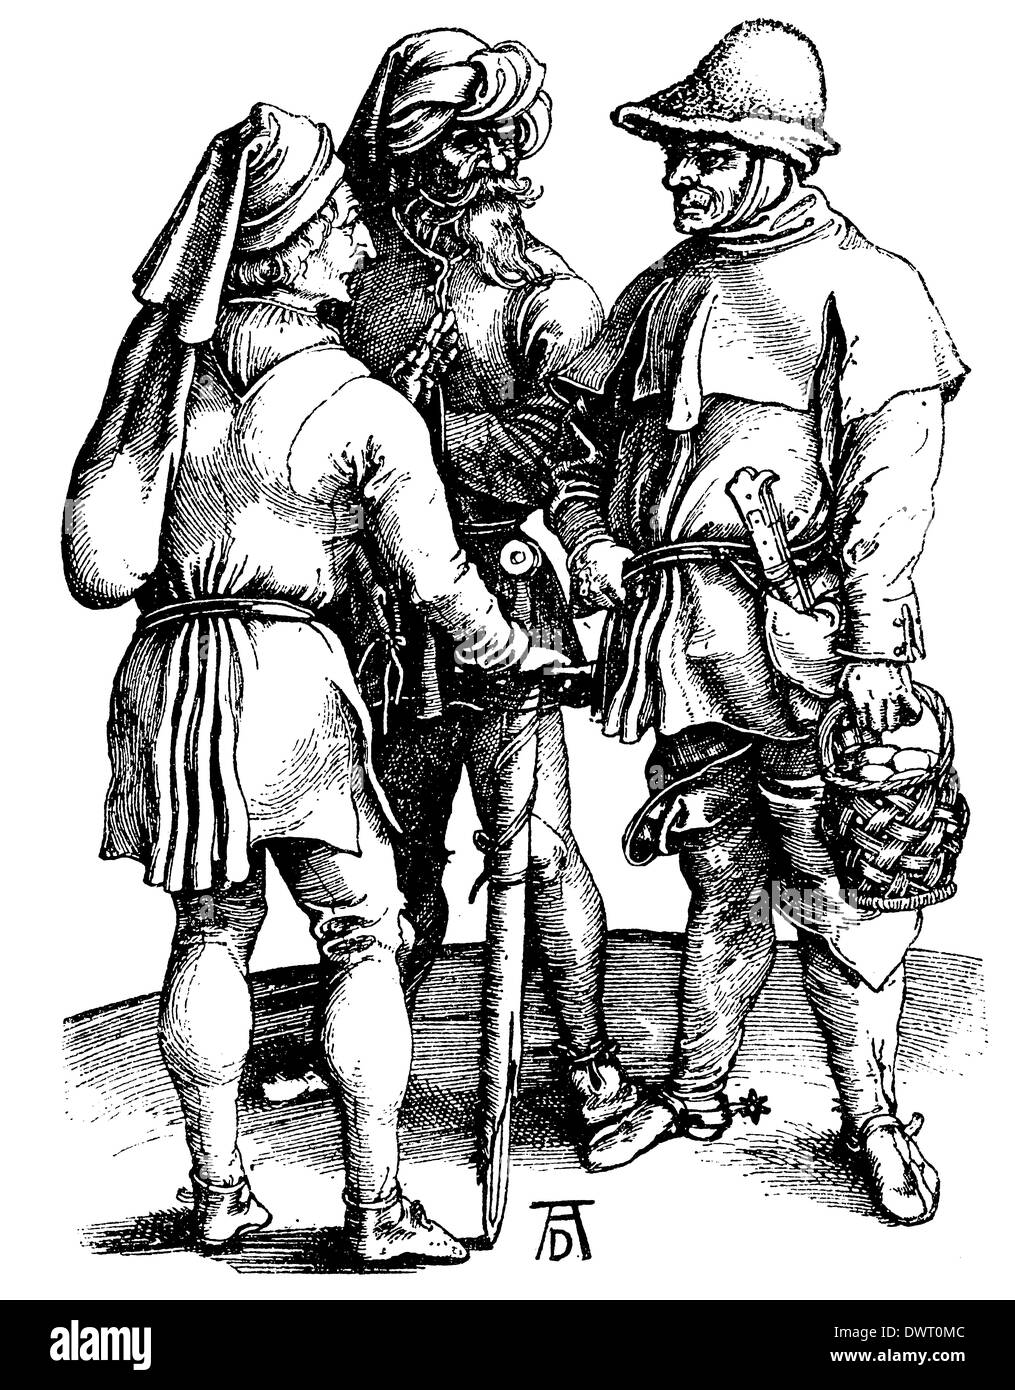 Deutsche Bauern im 16. Jahrhundert. Nach einem Kupferstich von Albrecht Dürer Foto Stock